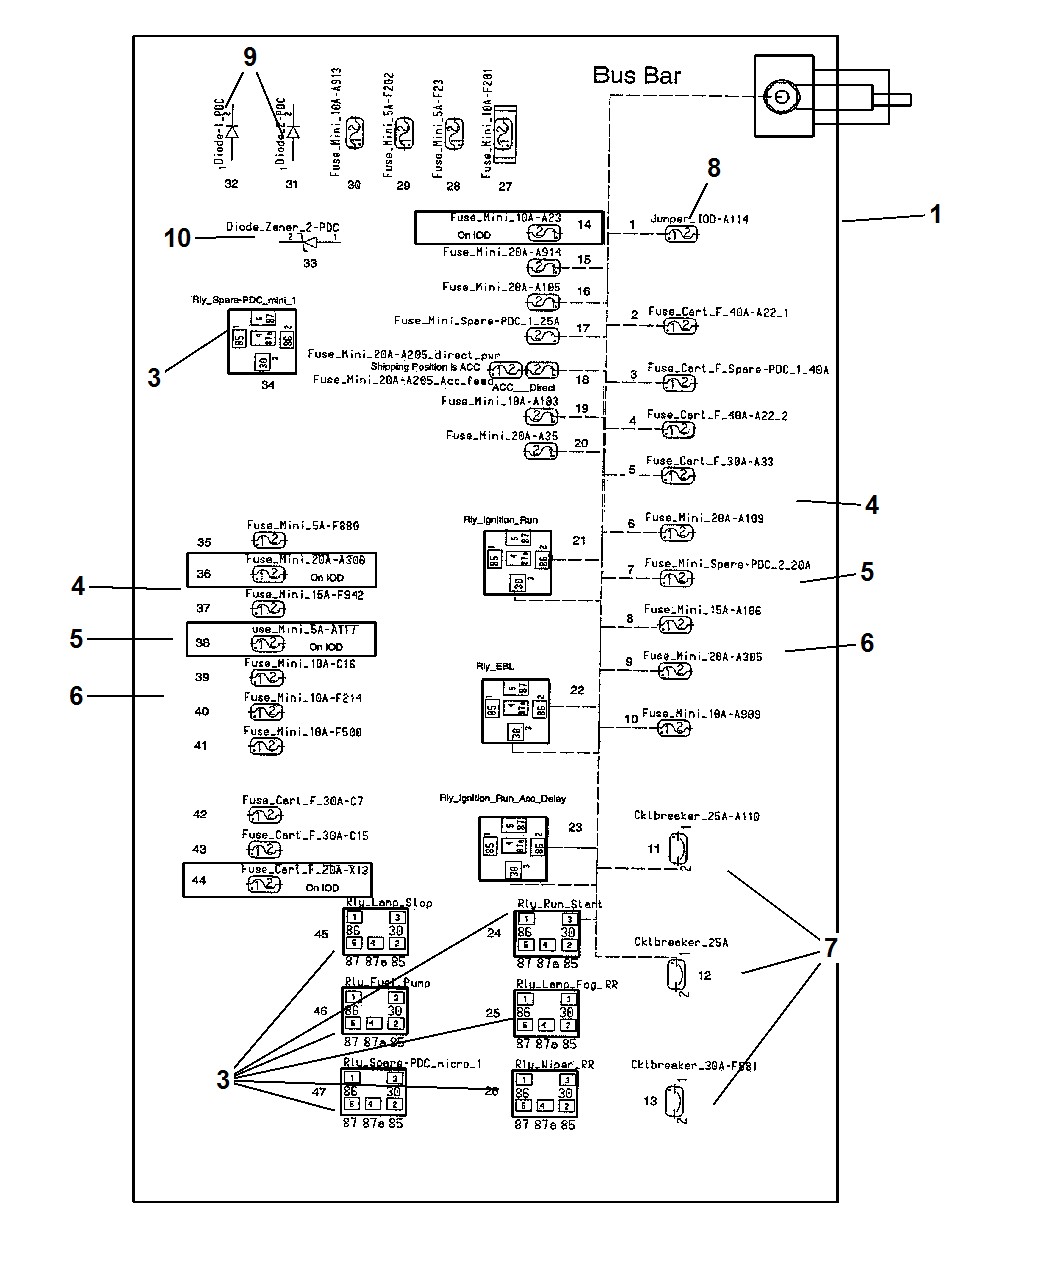 300c 2005 fuse box diagram wiring diagram 2005 chrysler fuse diagram 2005 chrysler 300 fuse diagram